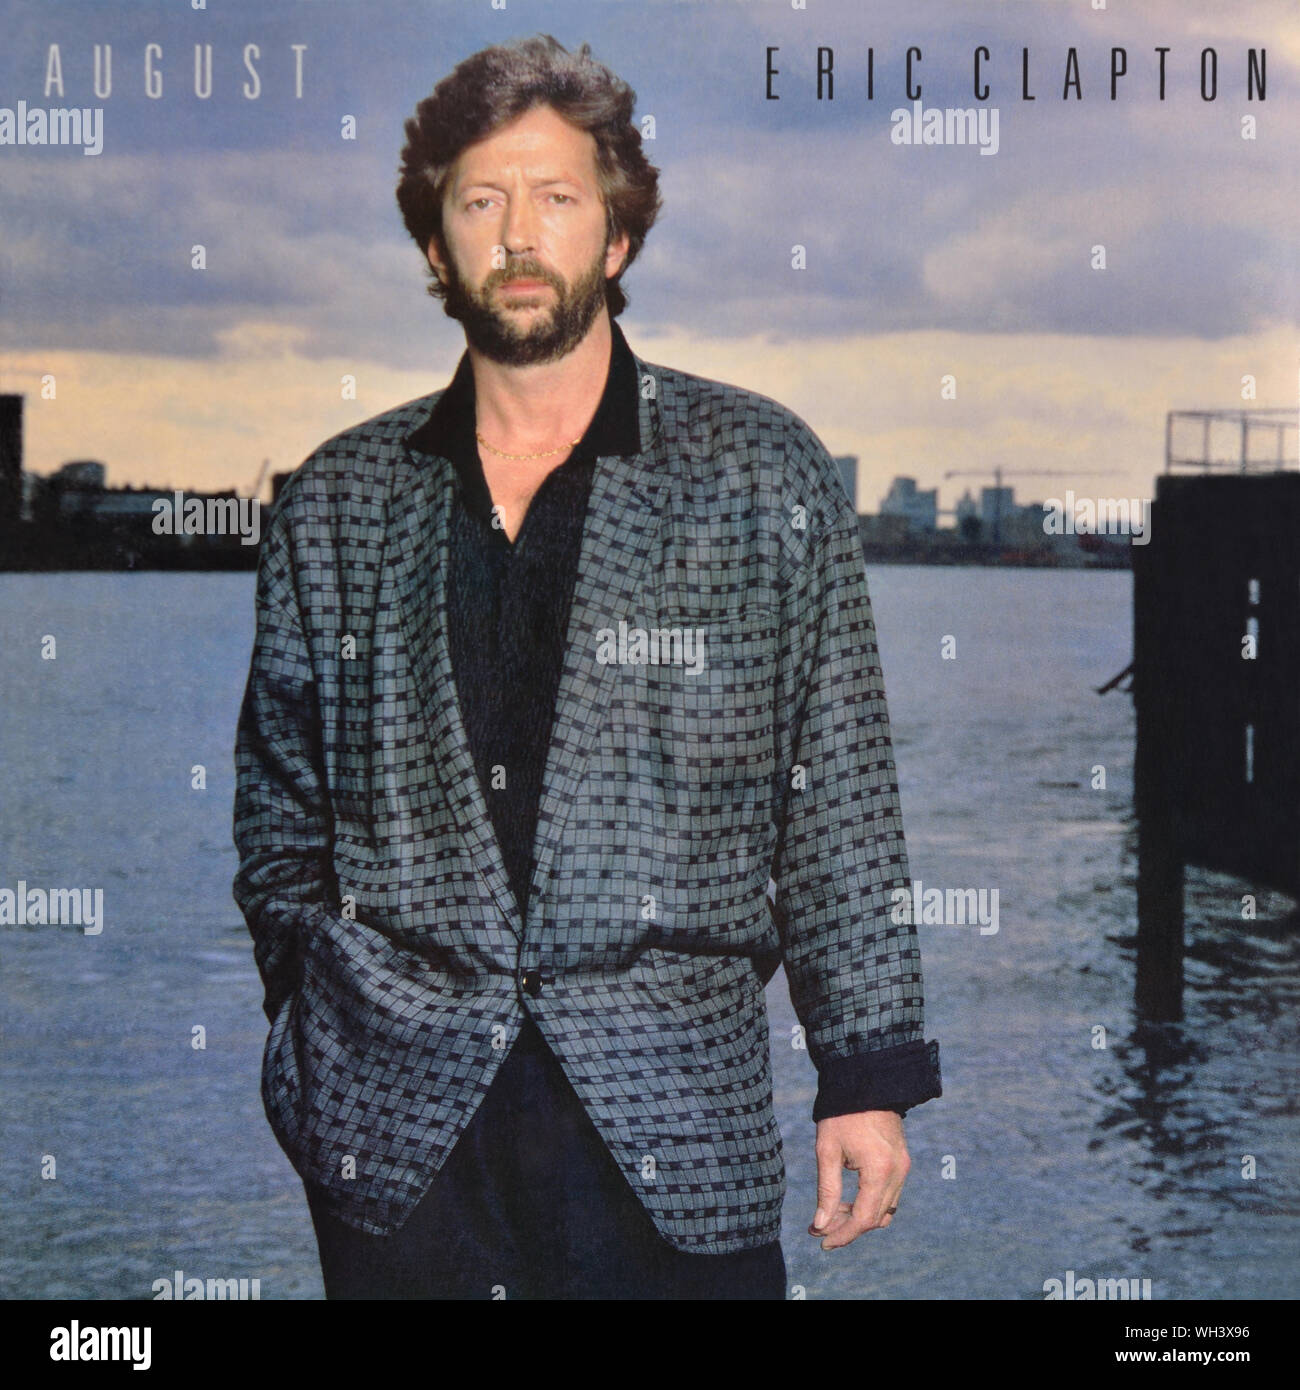 Eric Clapton - copertina originale dell'album in vinile - Agosto - 1986 Foto Stock